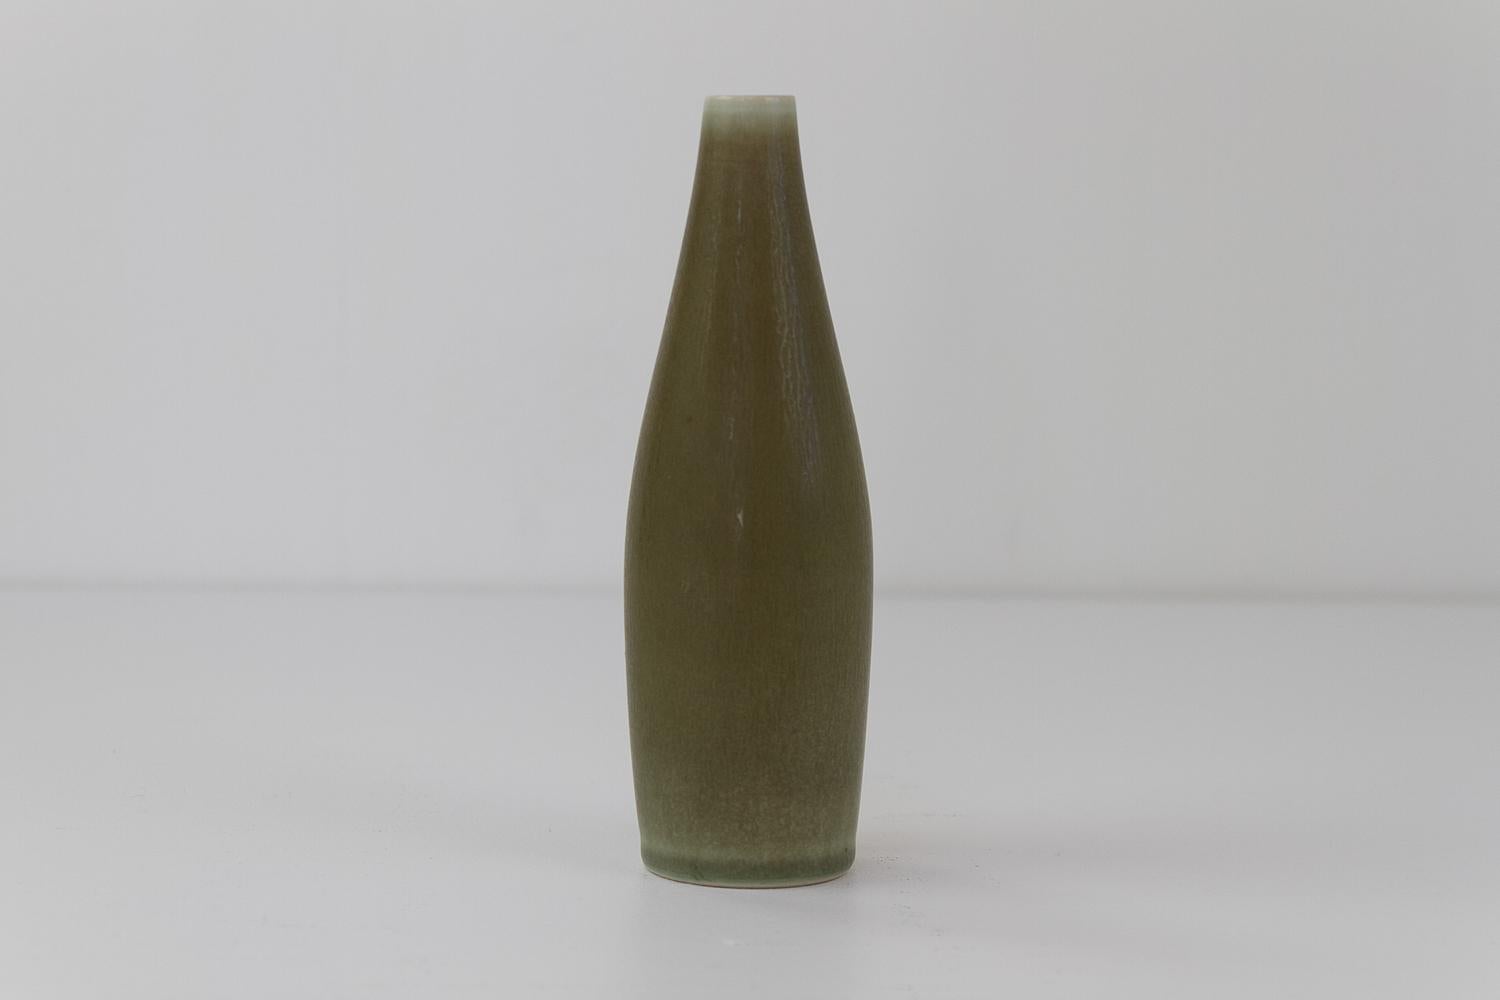 Scandinavian Modern Danish Modern Ceramic Vase by Per Linnemann-Schmidt for Palshus, 1960s. For Sale